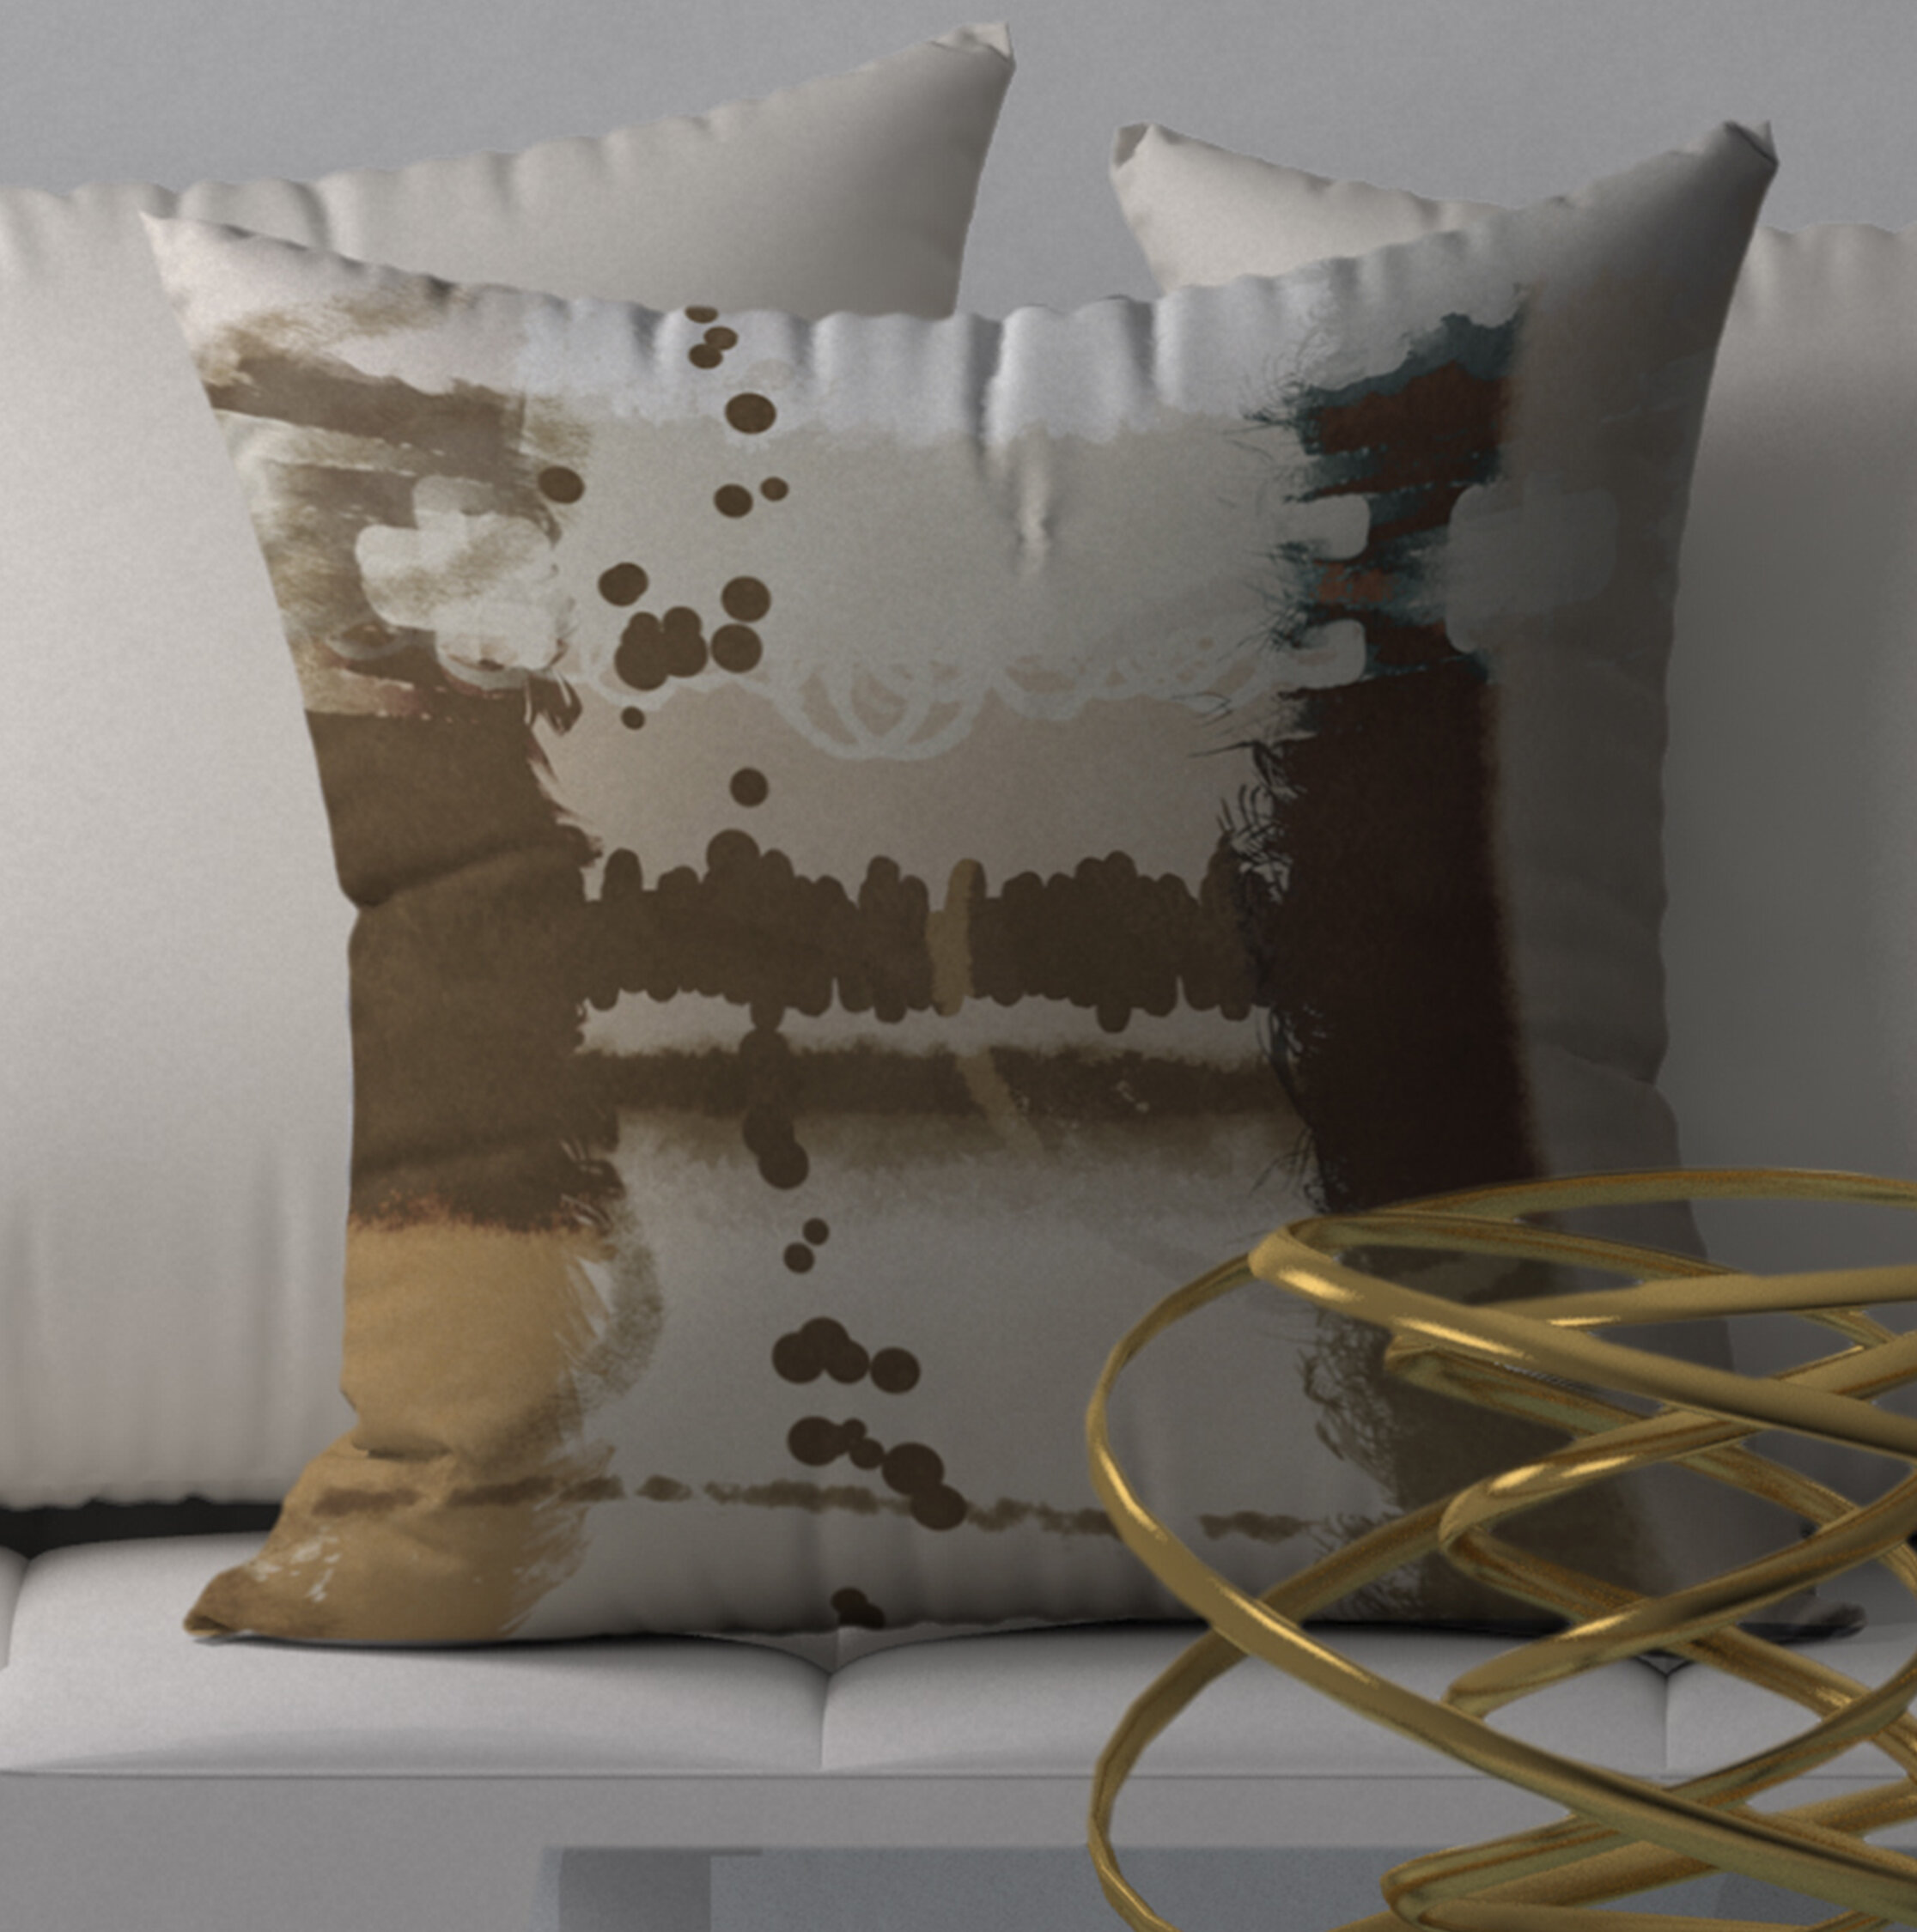 ArtVerse Katelyn Smith 18 x 18 Spun Polyester South Dakota Canvas Pillow